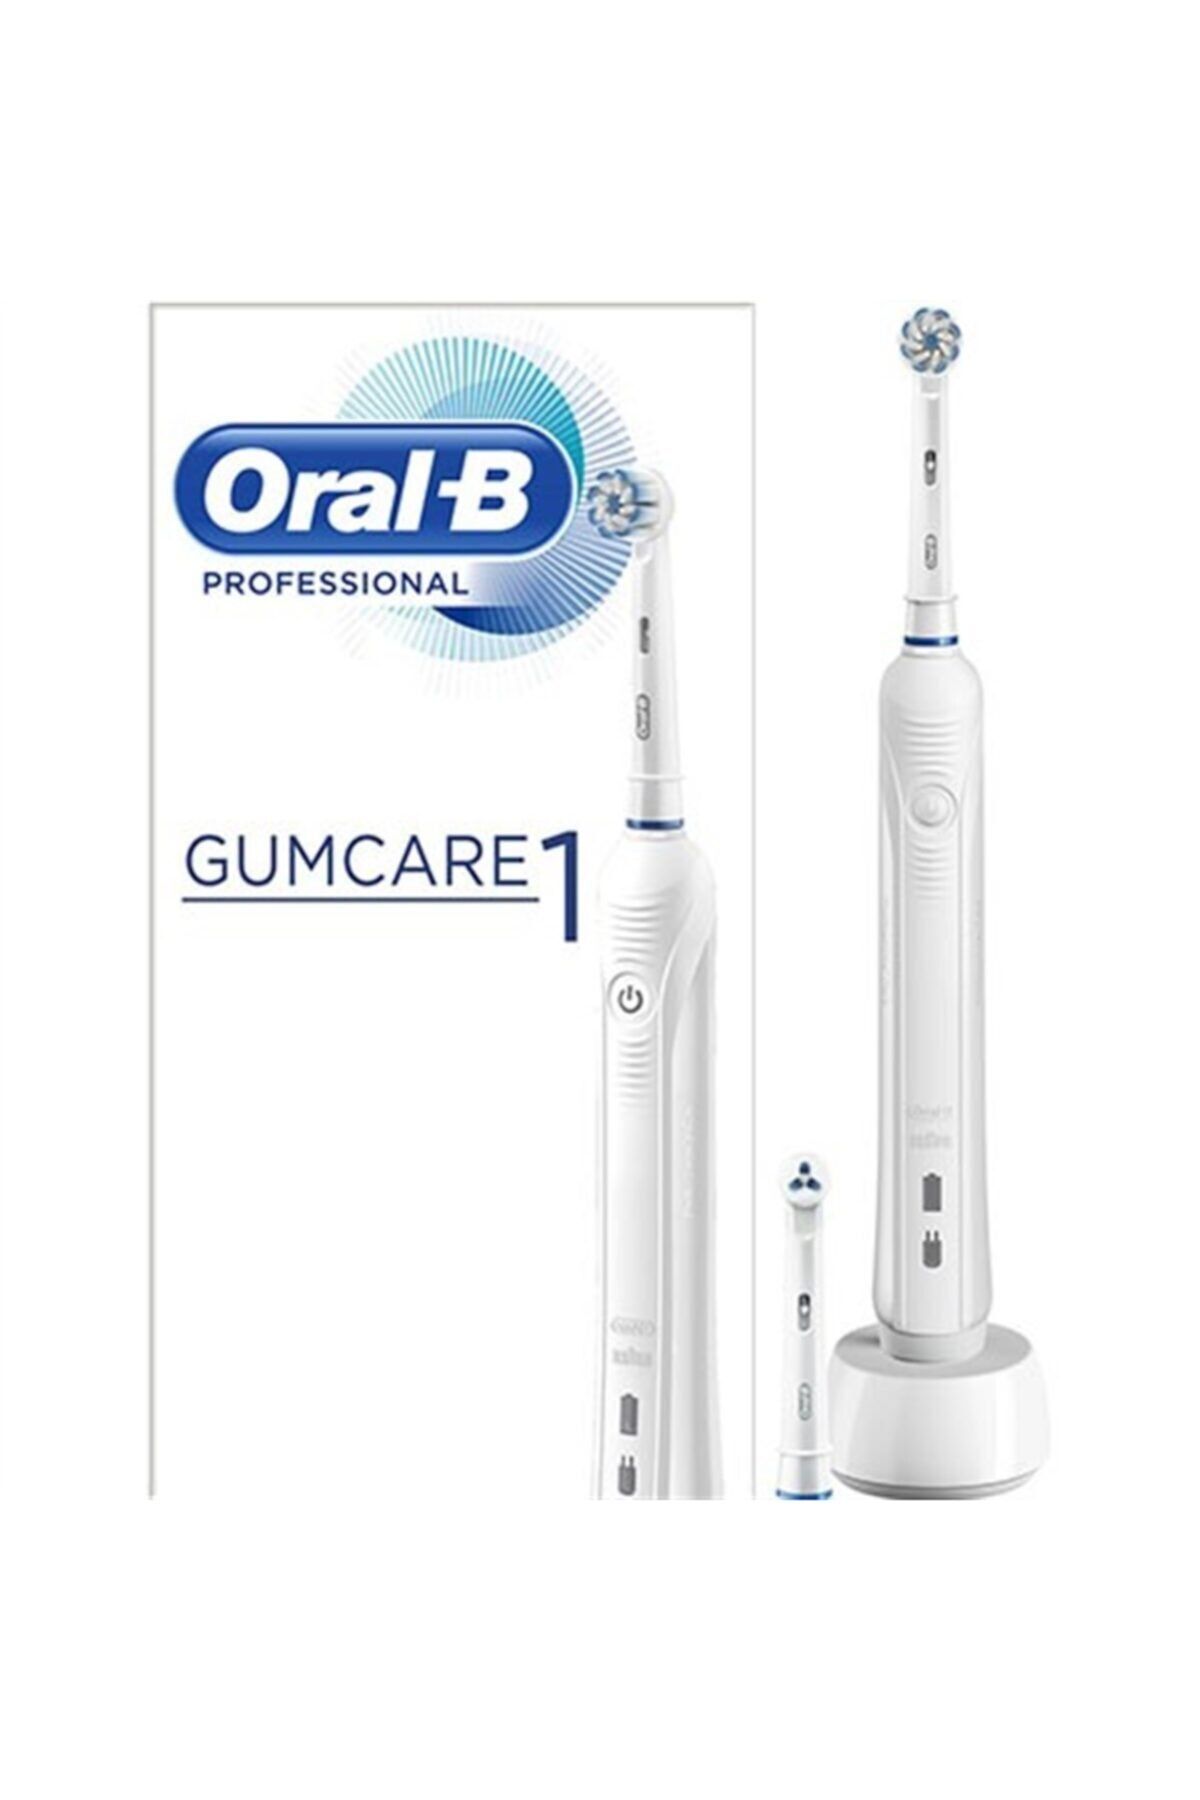 Oral-B Oral B Professional Gumcare 1 Şarj Edilebilir Diş Fırçası